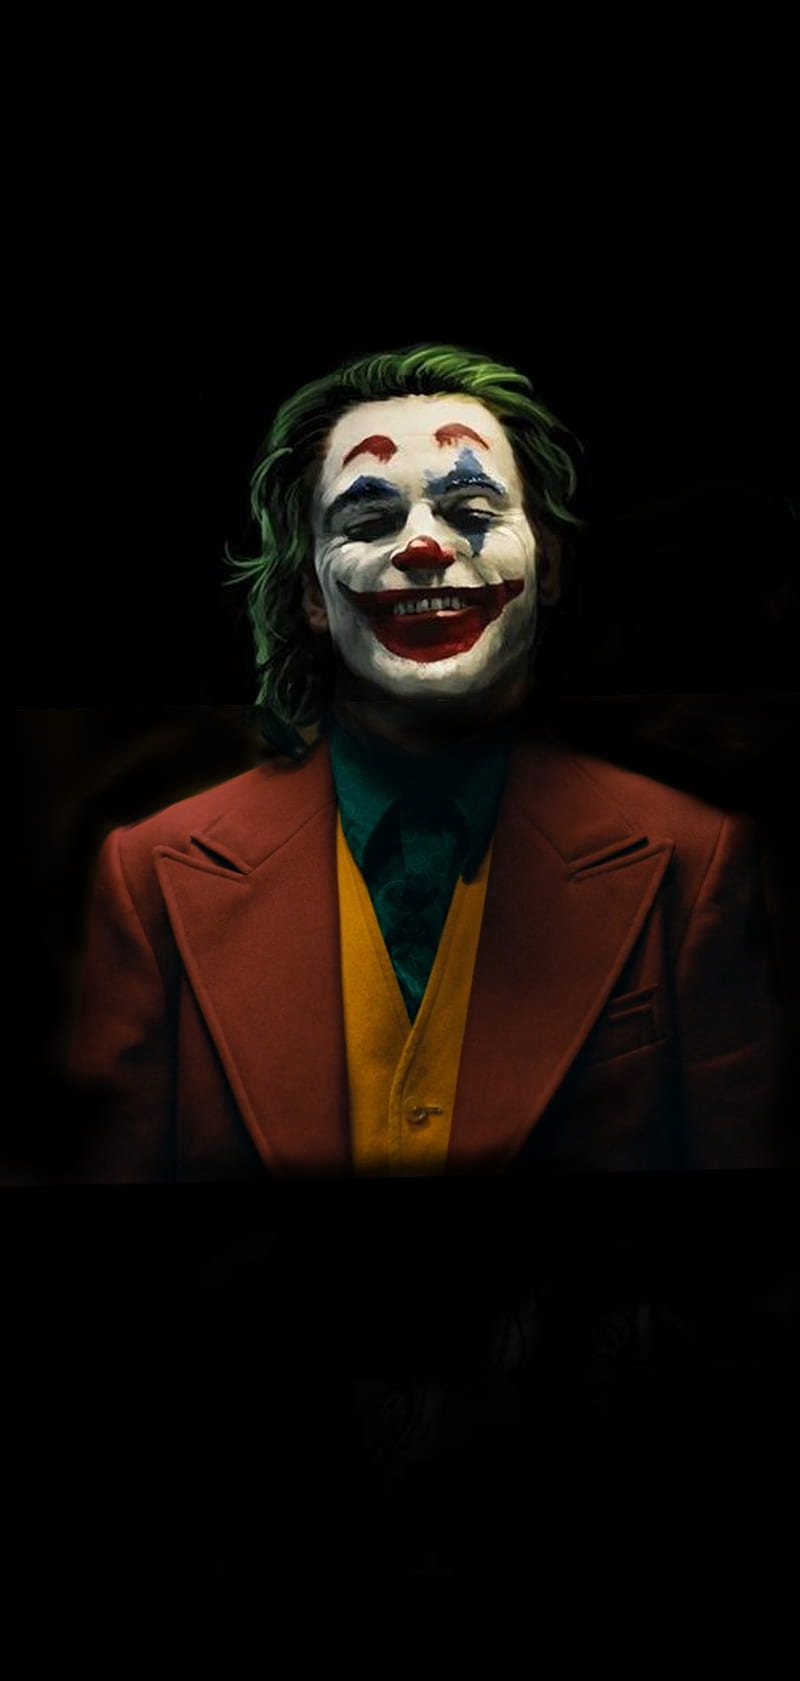 Joker 2019 Anime Character Poster Preview | 10wallpaper.com